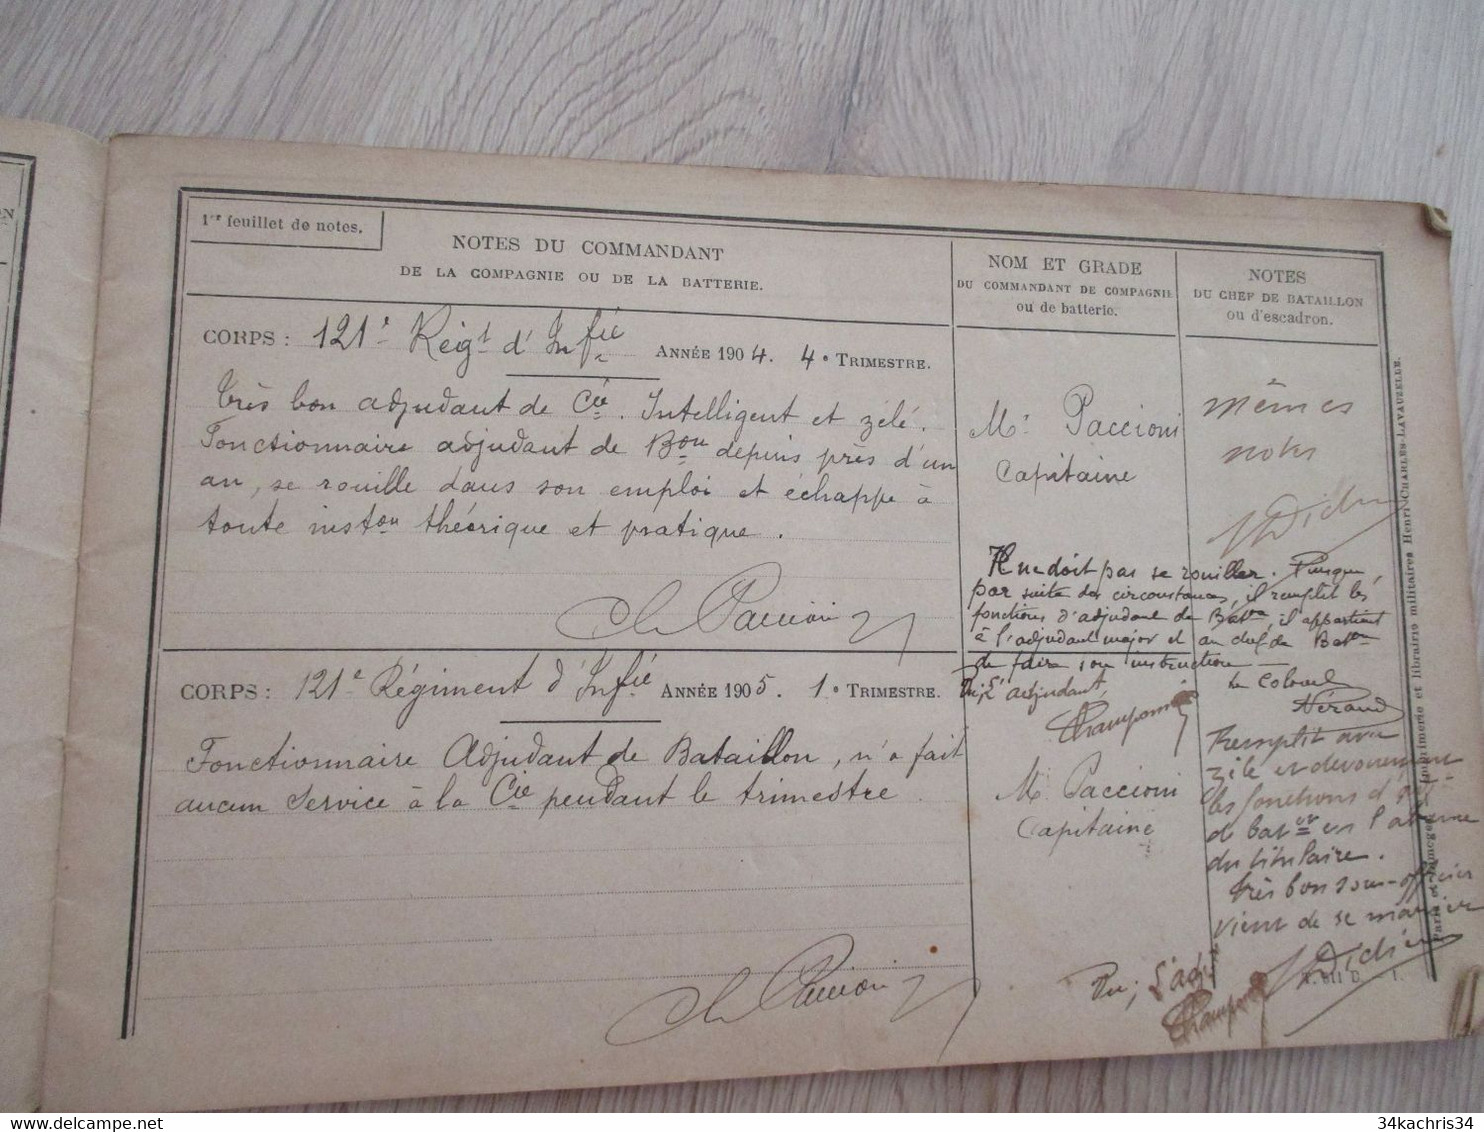 Rare 121 ème Régiment Infanterie Avec Photo Champonnier Carnet De Notes 12 P Manuscrites De Commentaires Su Officier.... - Dokumente